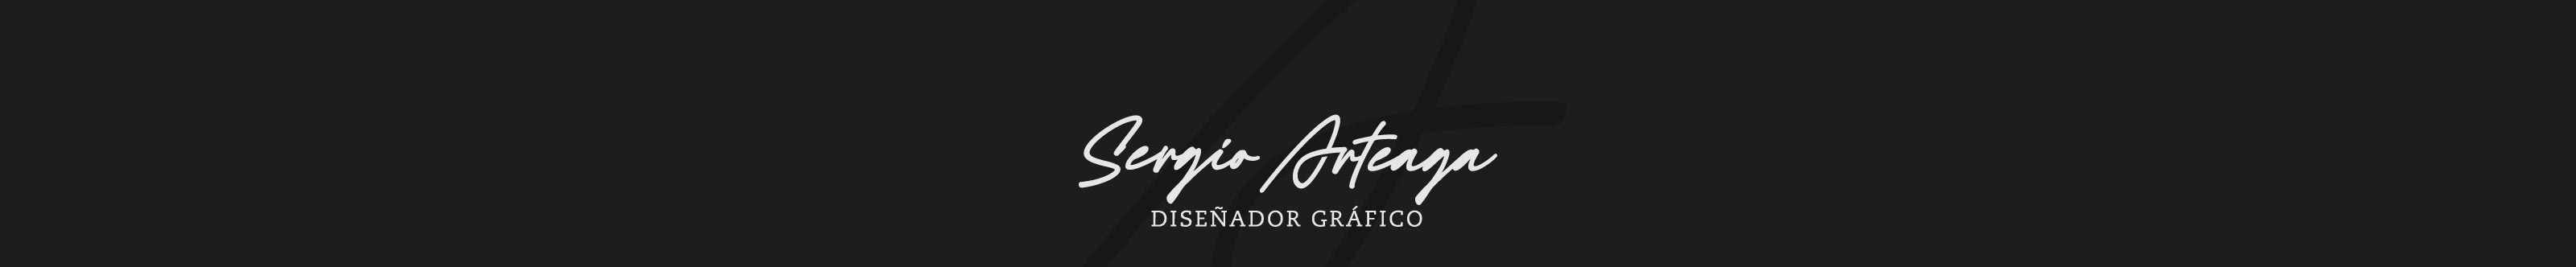 Sergio Arteaga's profile banner